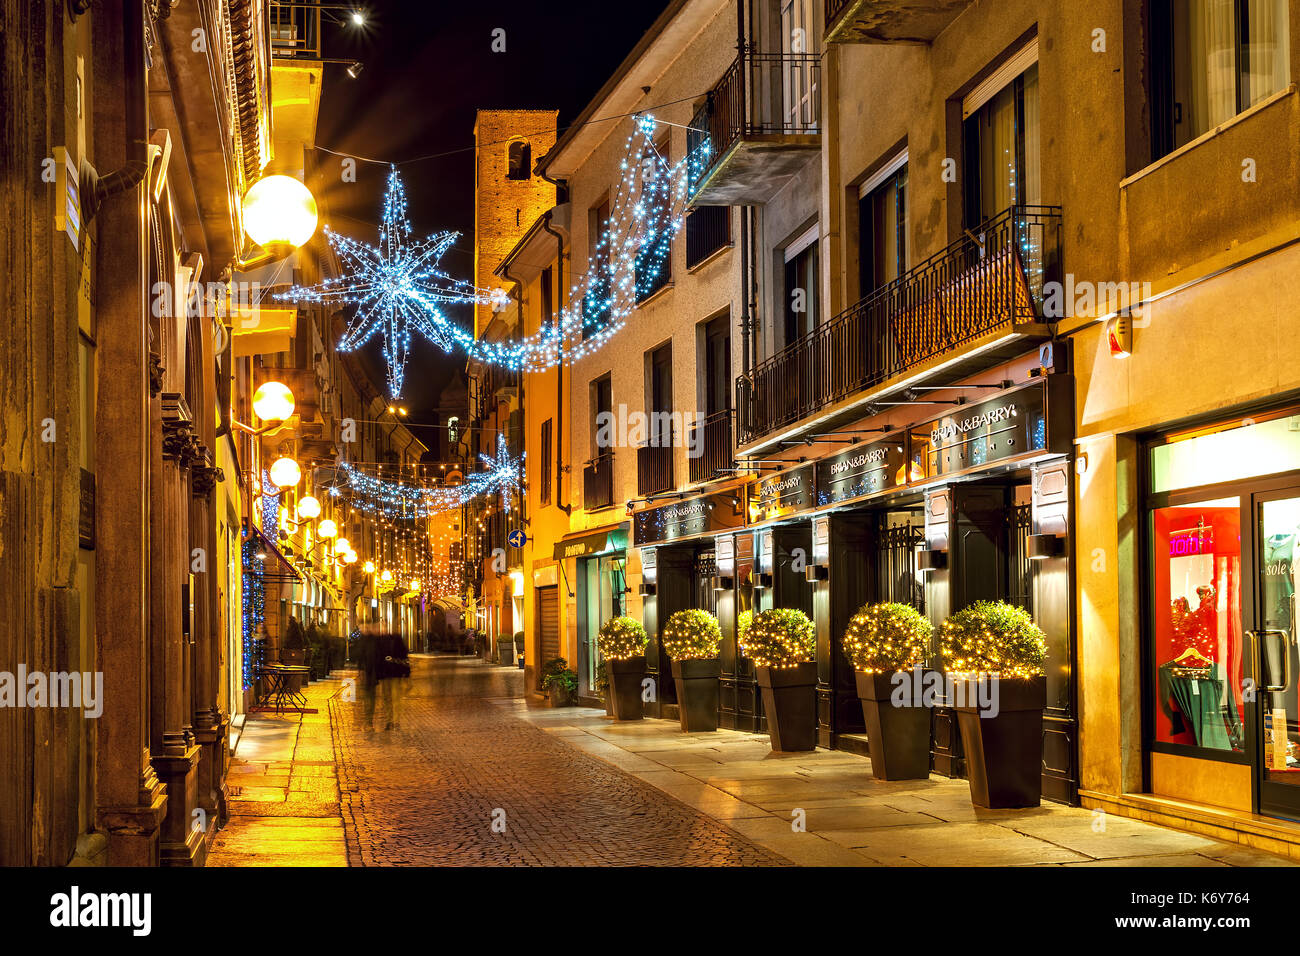 Alba, Italia - 07 dicembre 2011: strada pedonale e negozi nella città vecchia illuminate per natale. Questa zona è molto popolare tra i turisti e la gente del posto Foto Stock